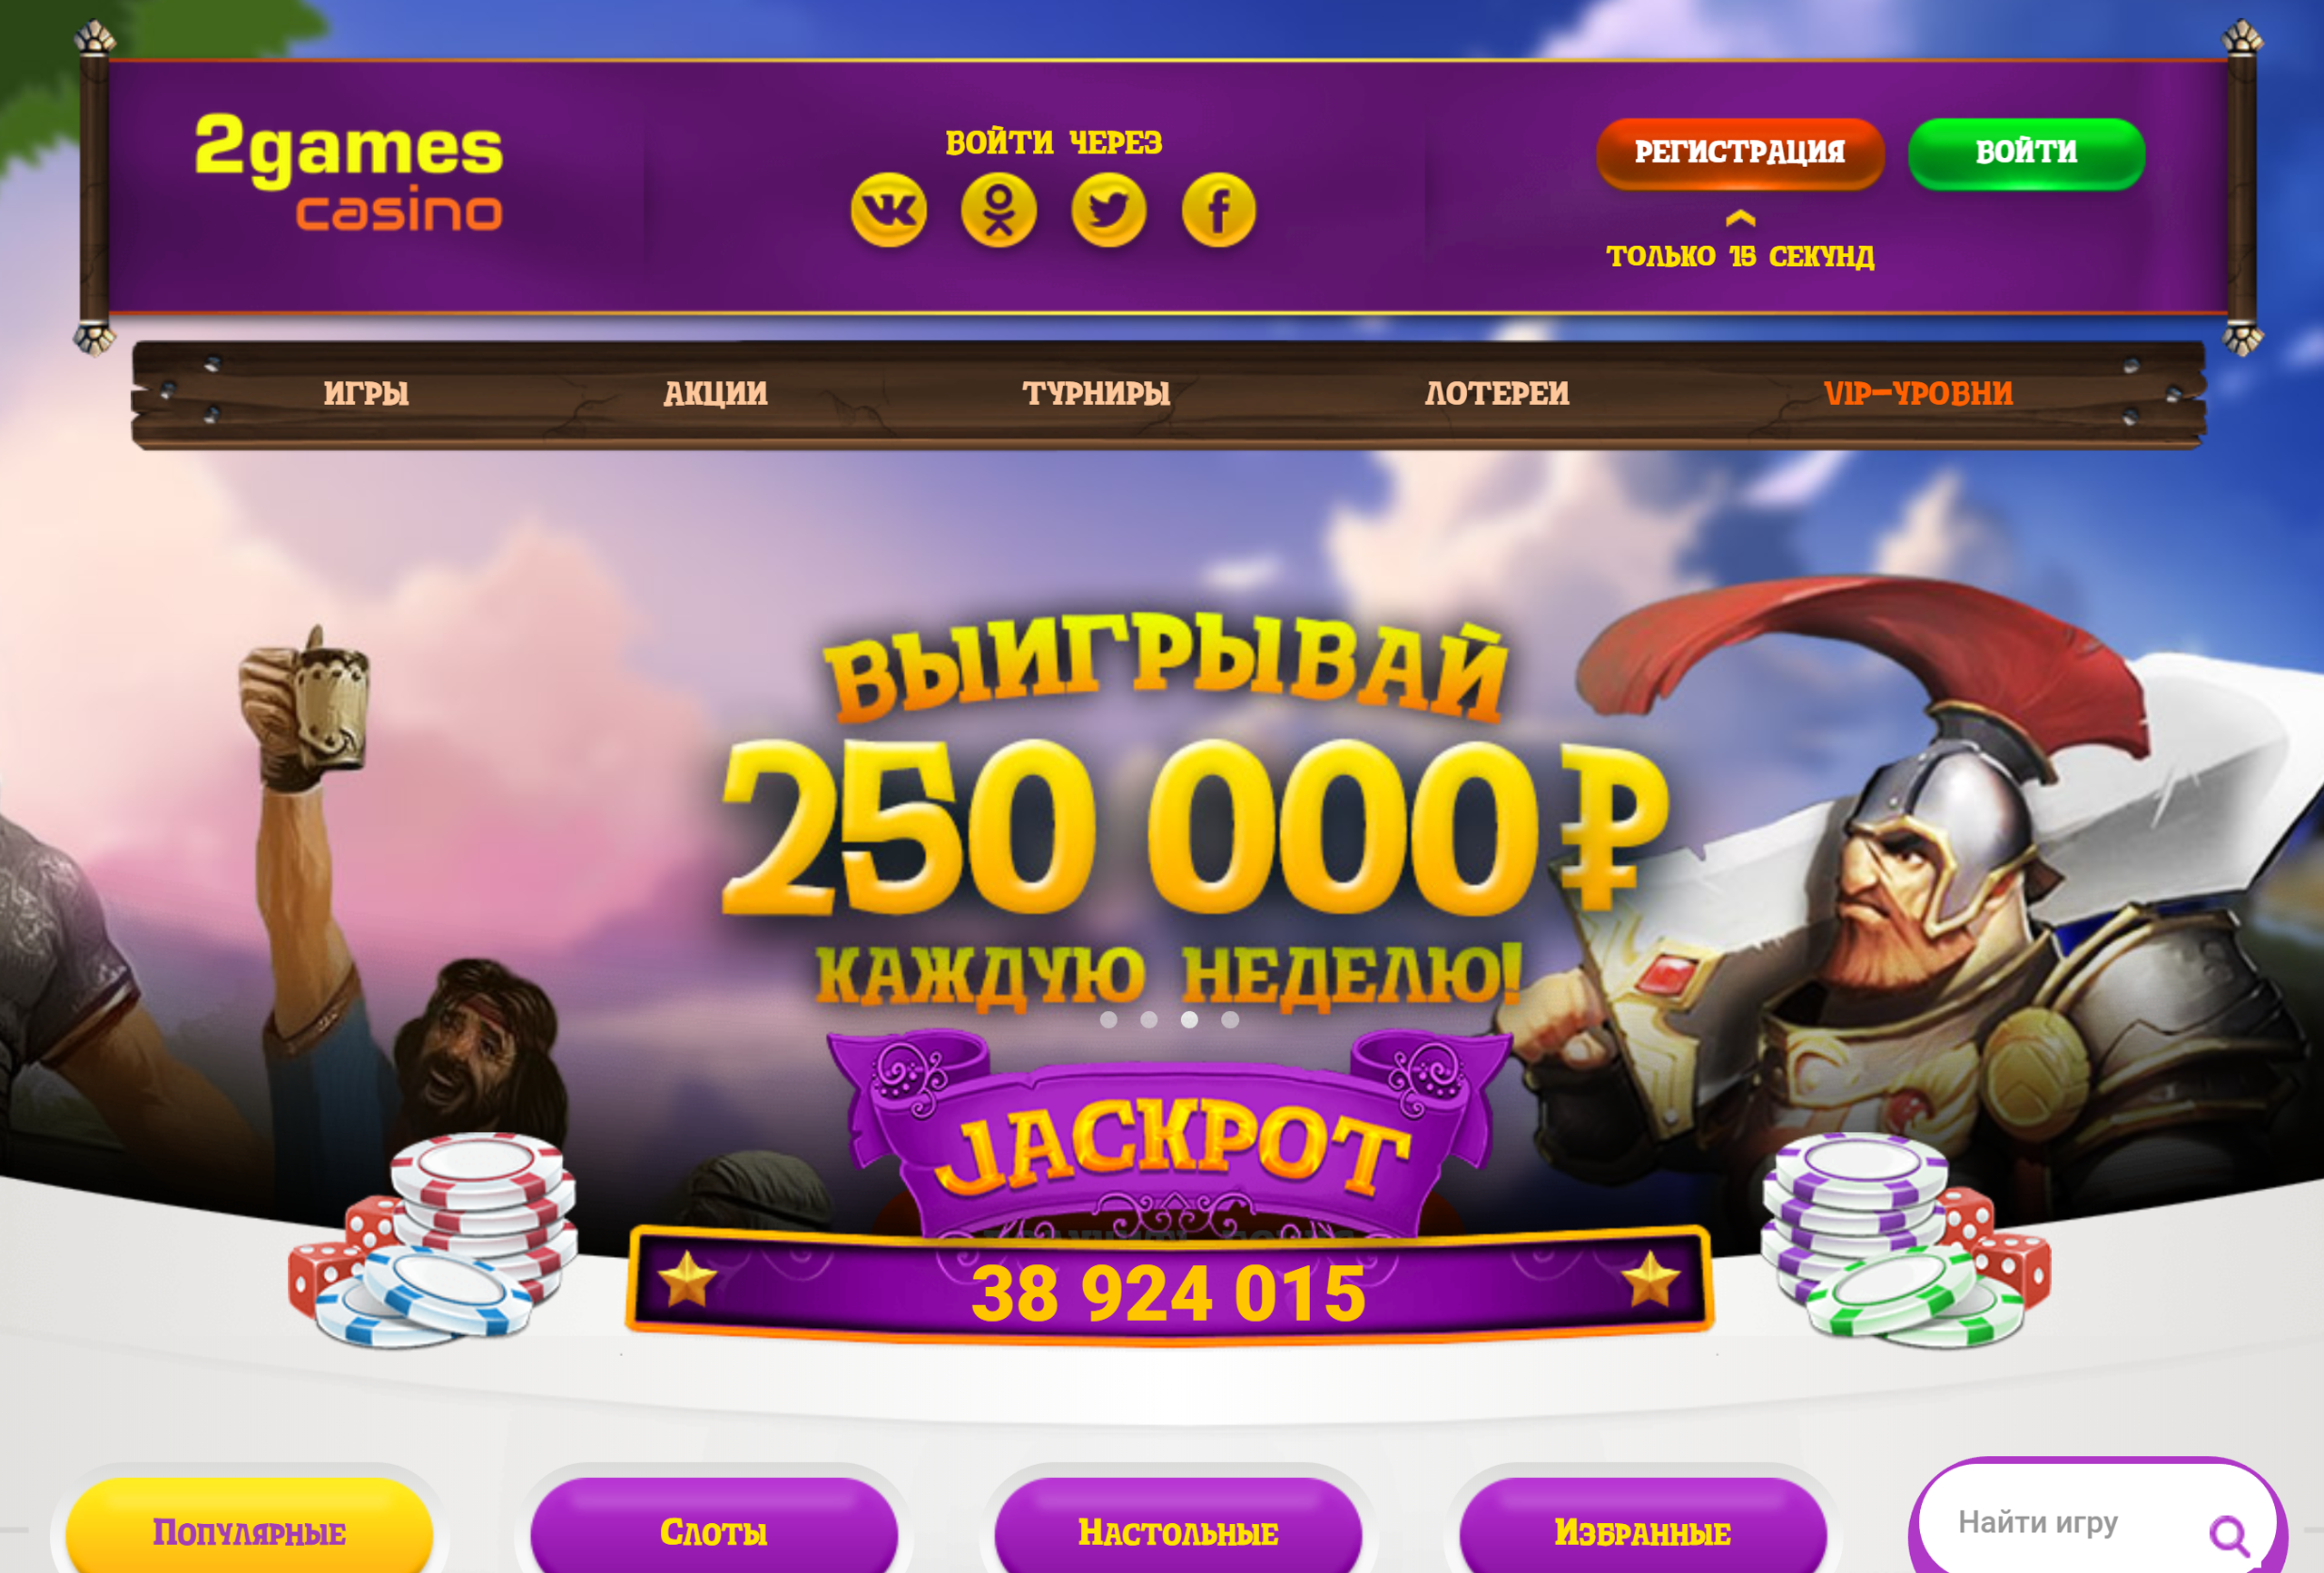 Https game casino ru. Скрипт казино игровые. Бесплатный скрипт казино.